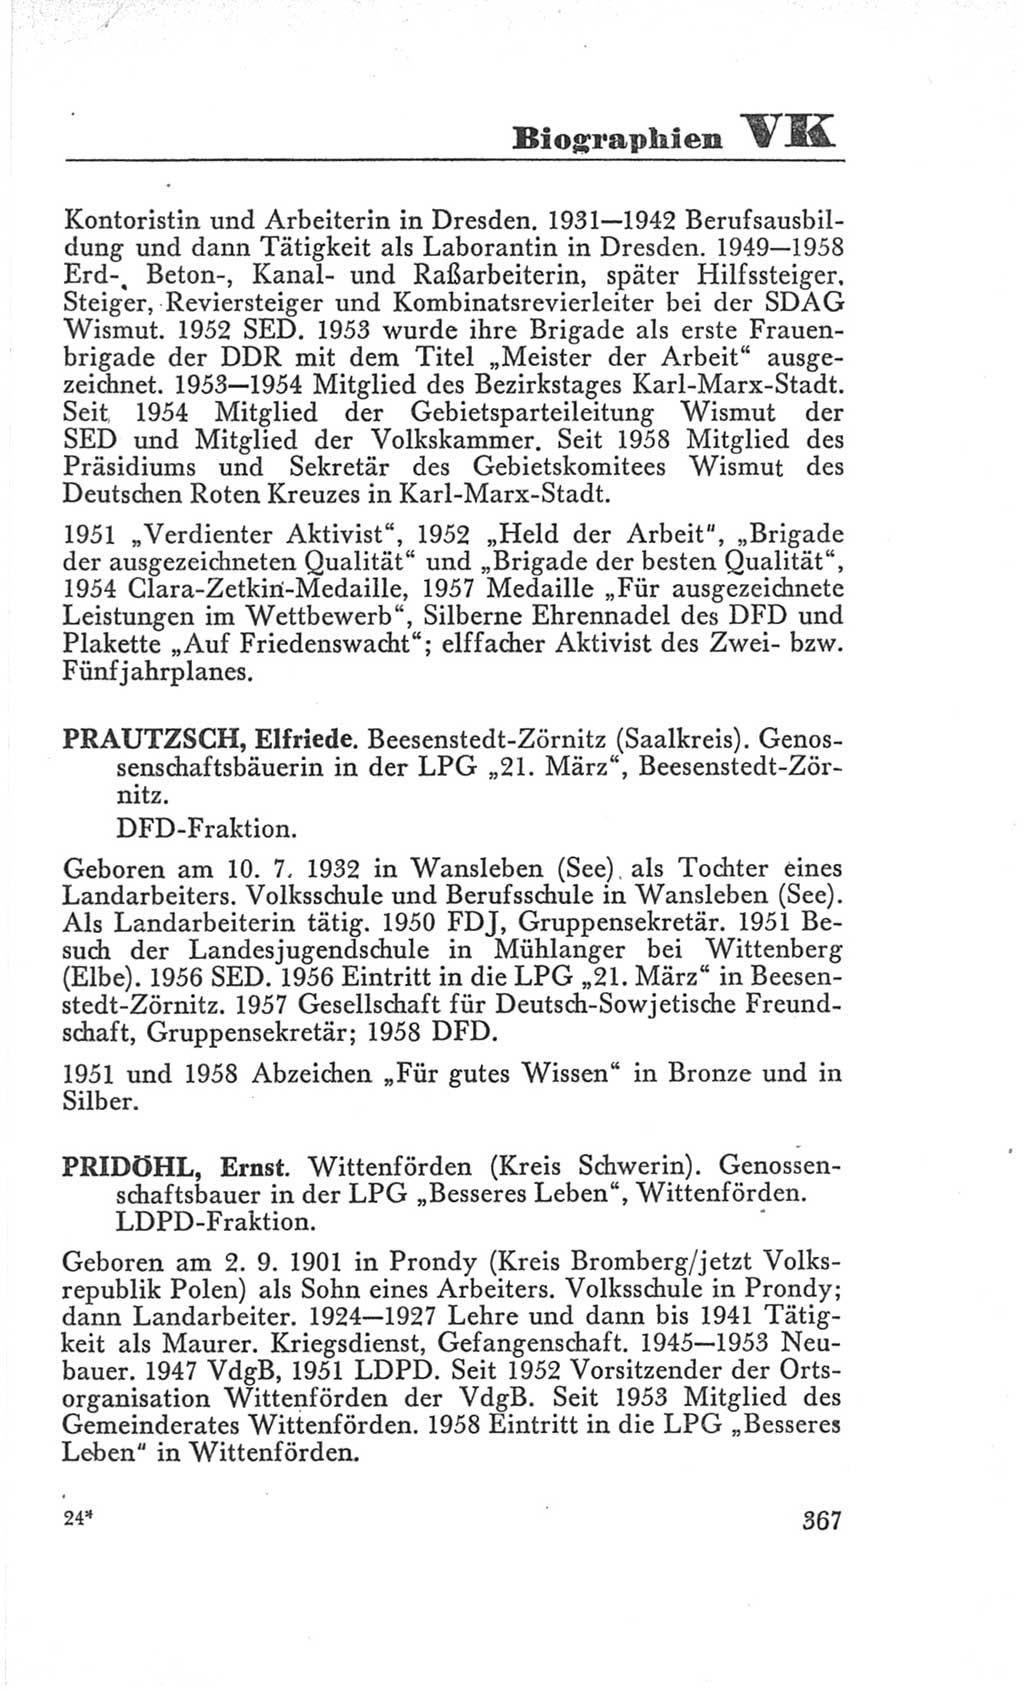 Handbuch der Volkskammer (VK) der Deutschen Demokratischen Republik (DDR), 3. Wahlperiode 1958-1963, Seite 367 (Hdb. VK. DDR 3. WP. 1958-1963, S. 367)